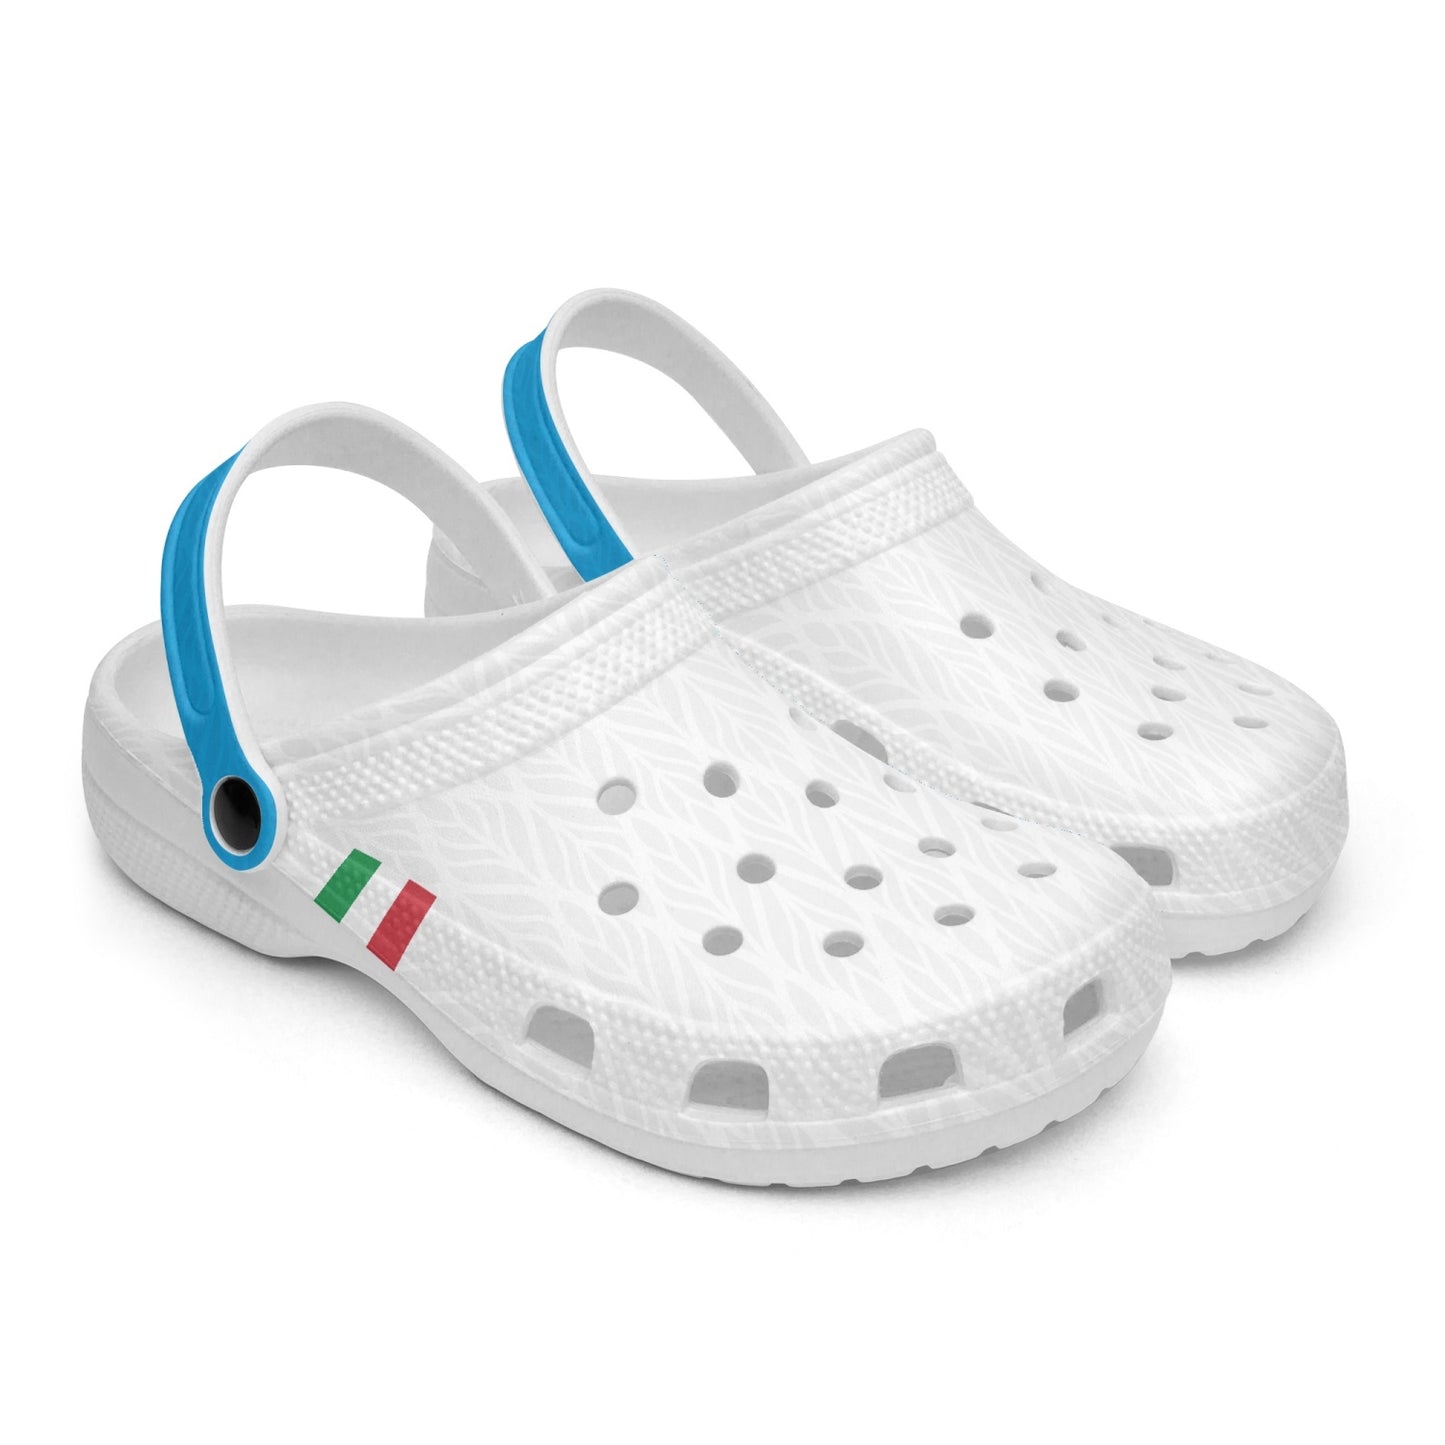 Lazio Clogs shoes